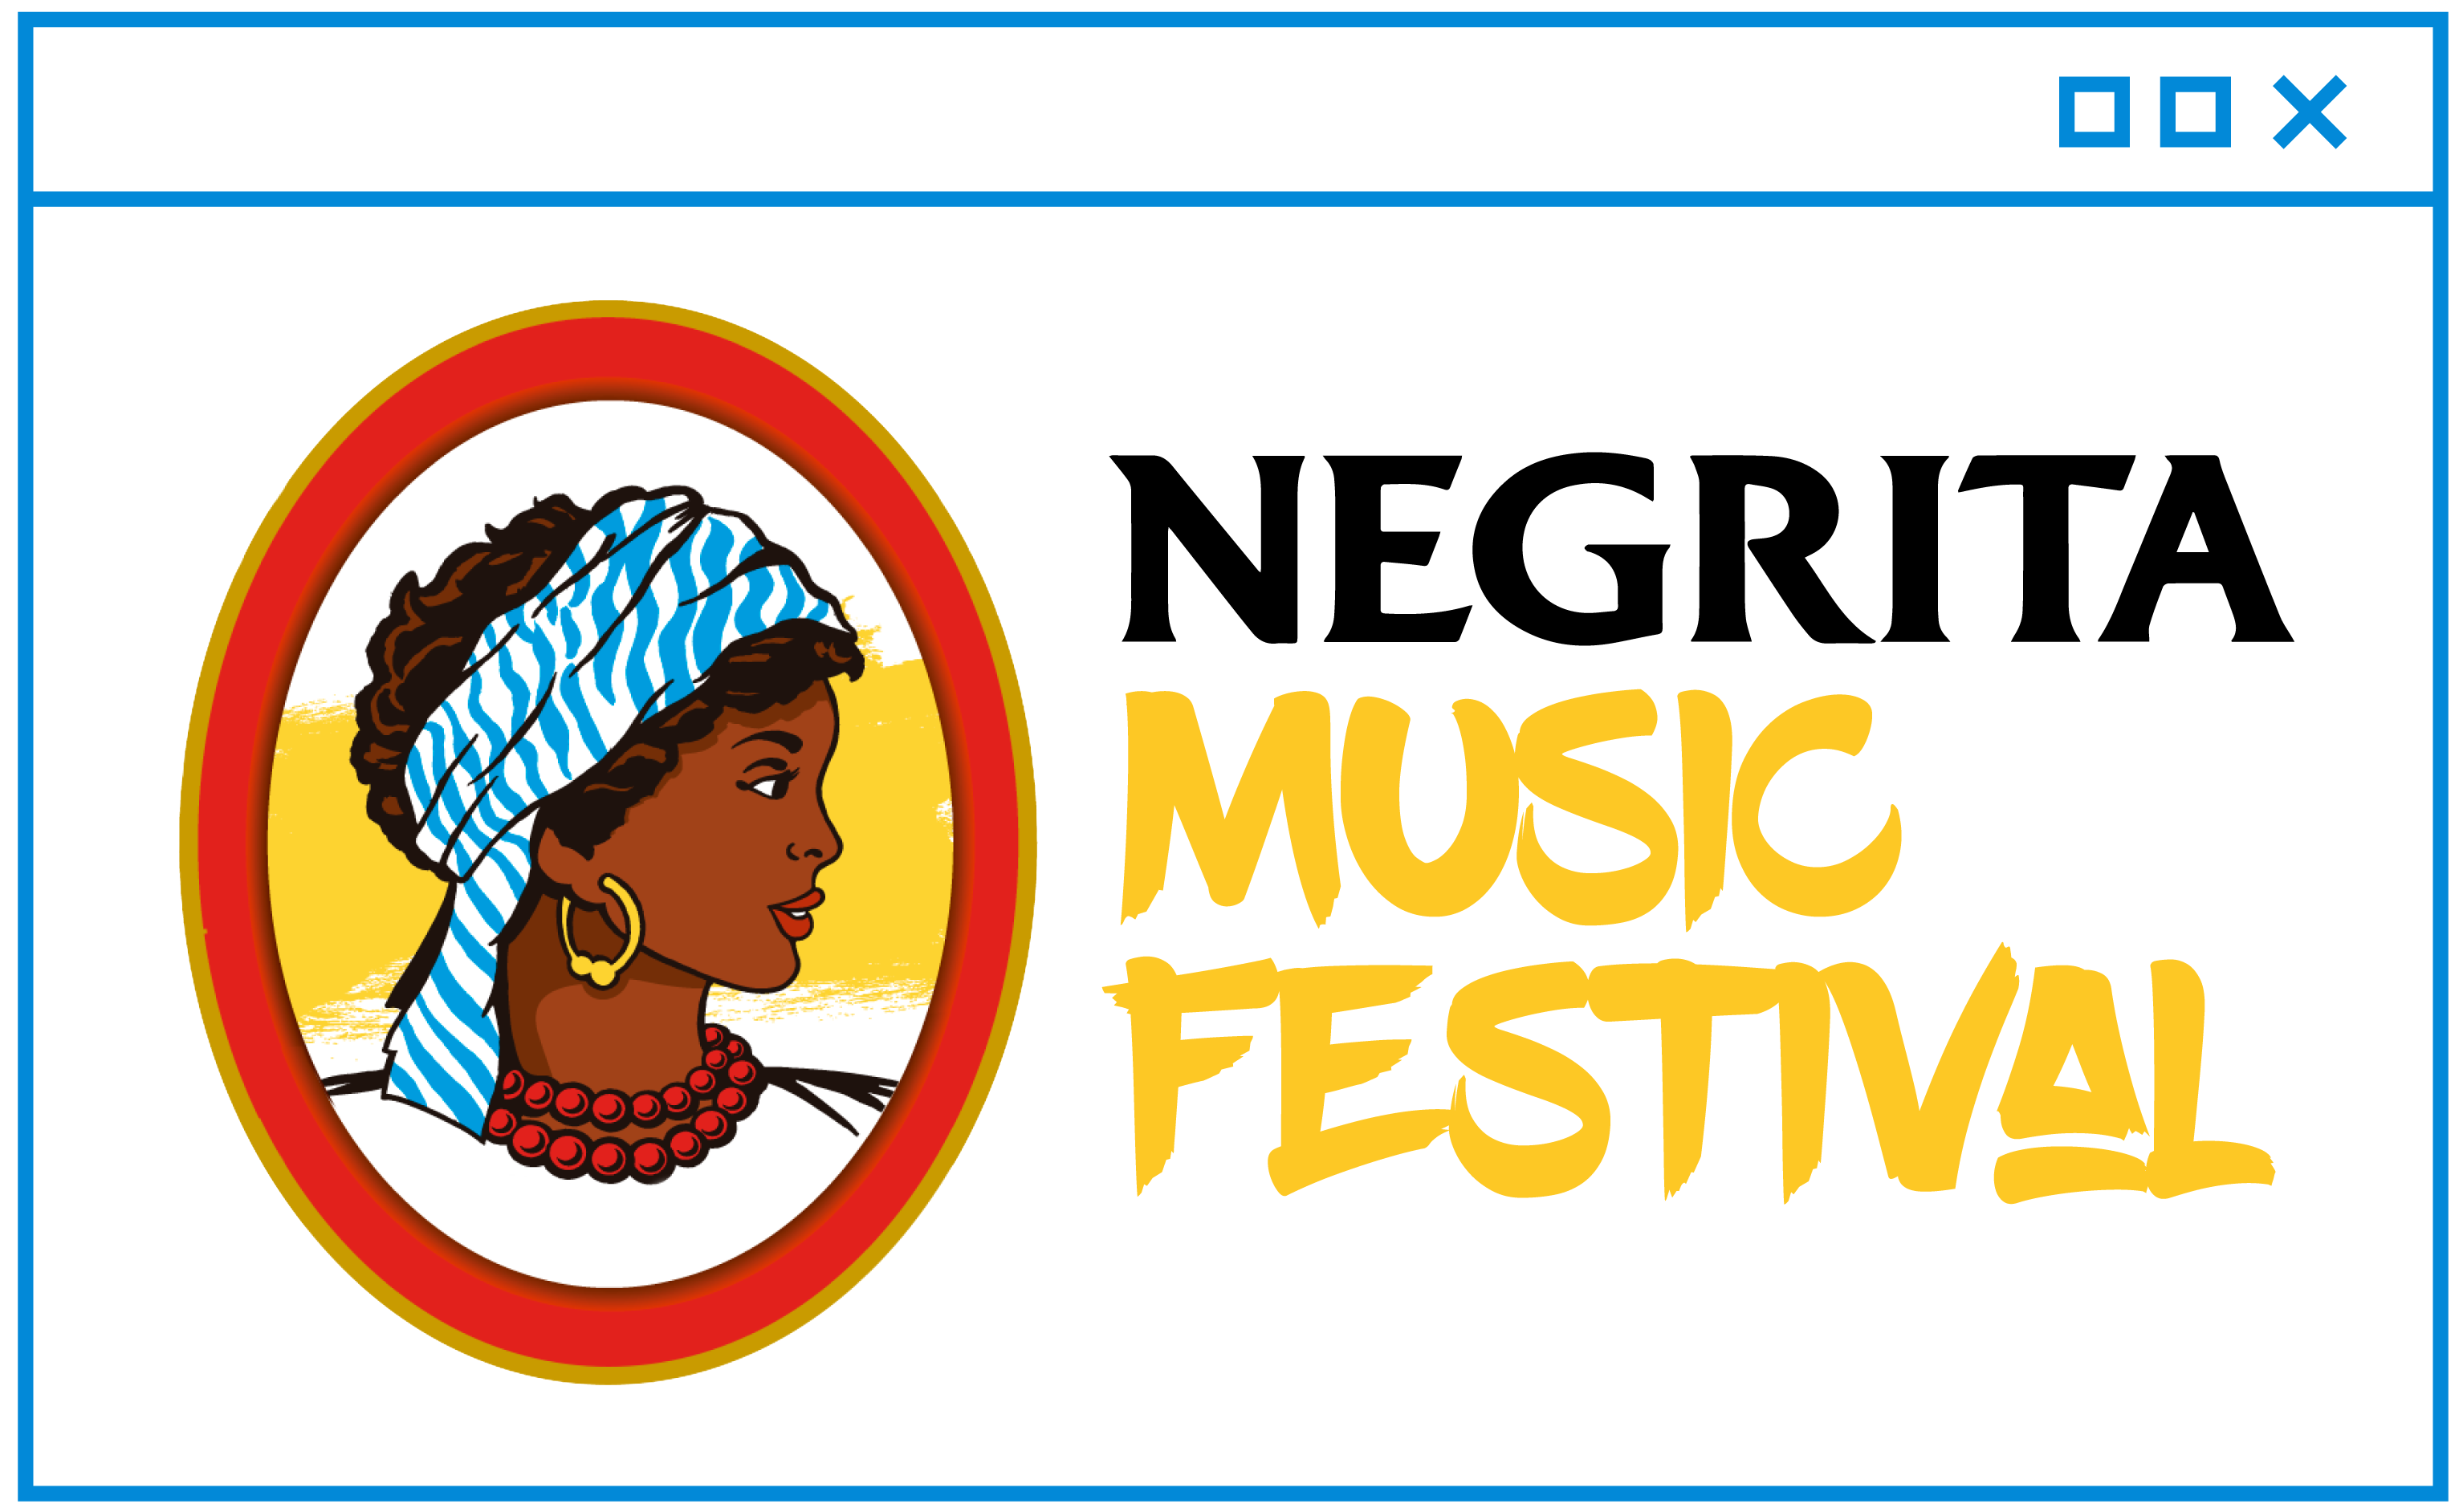 Vuelve el Negrita Music Festival a Santander en 2023. El festival se celebrará los días 1 y 2 de Septiembre en La Virgen del Mar en Santander.